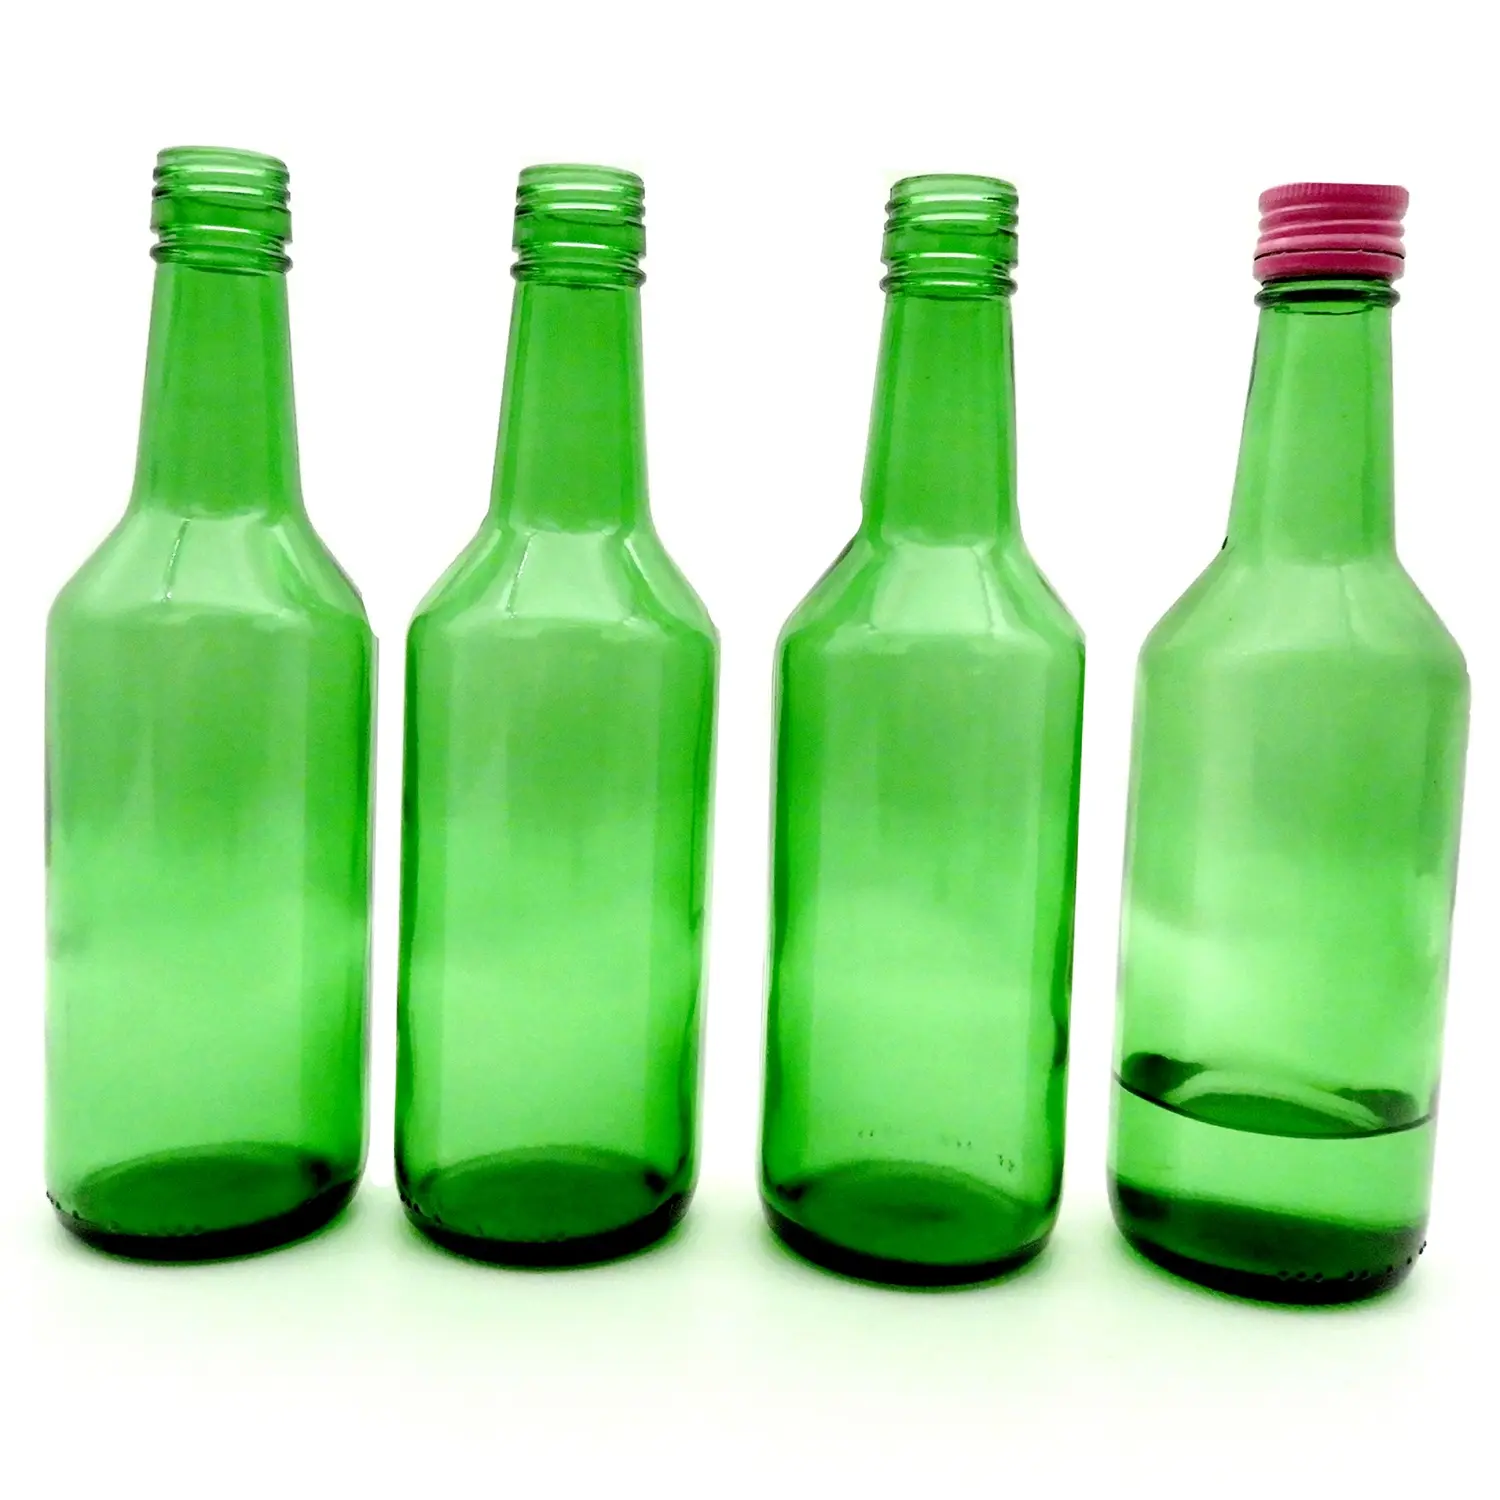 स्टॉक में हरे रंग की सोजू कांच की बोतल 360 मिलीलीटर ग्रीन कोरिया सोजू बोतलें